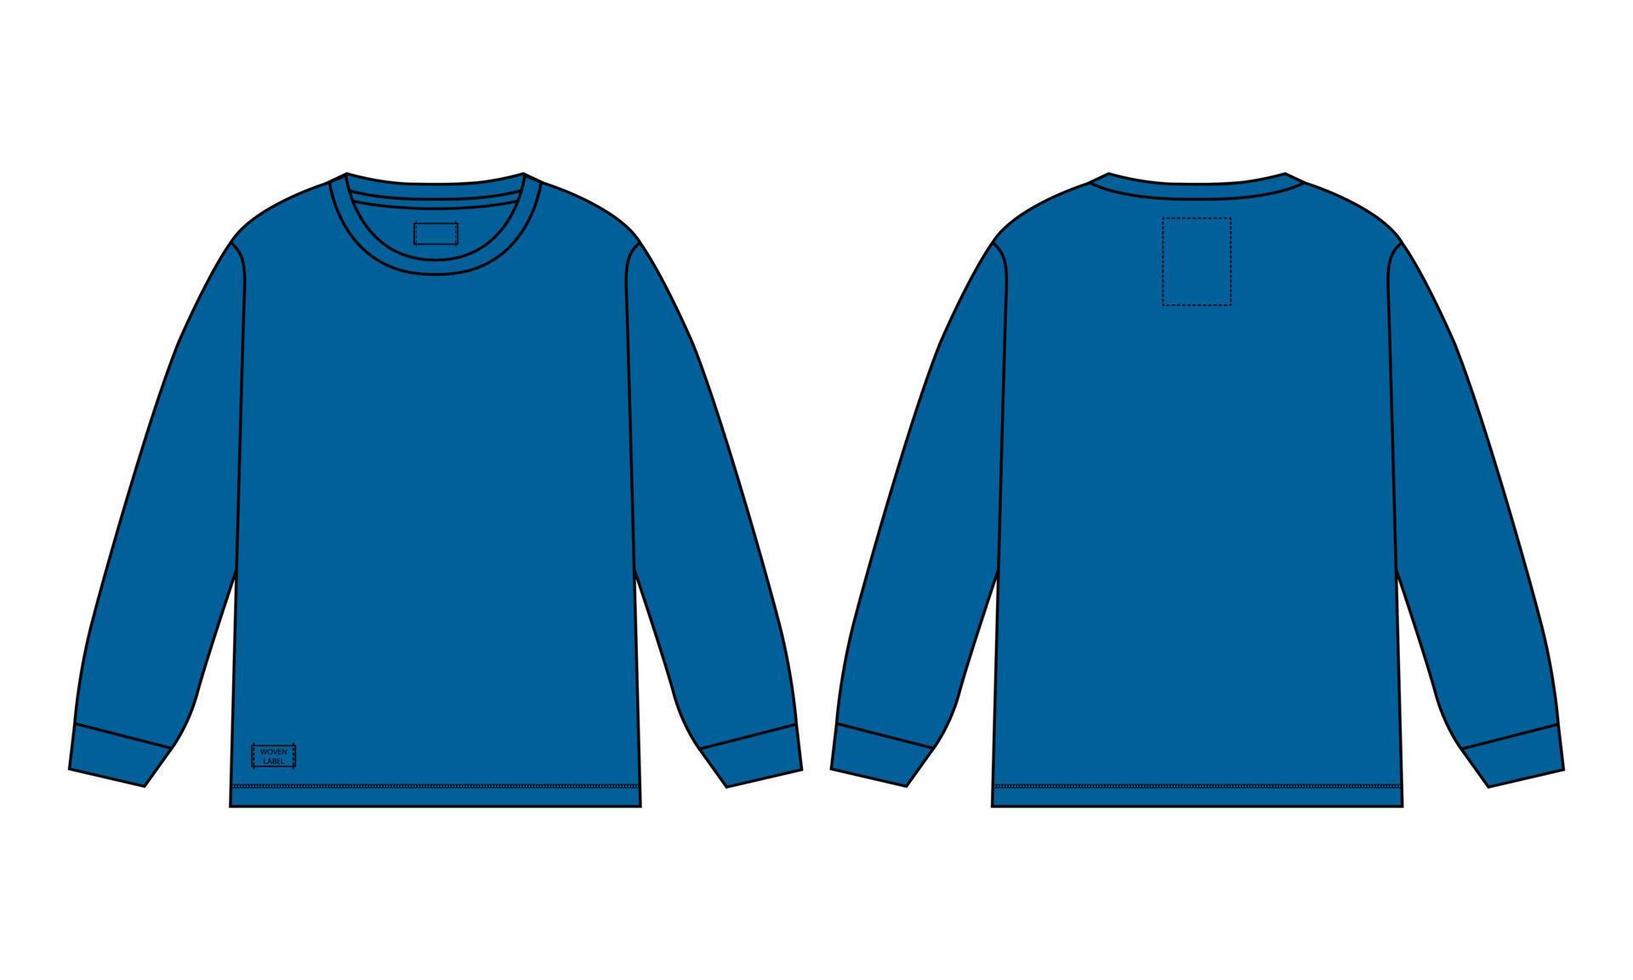 camiseta de manga larga moda técnica boceto plano ilustración vectorial plantilla de color azul vistas frontal y posterior aisladas en fondo blanco. vector